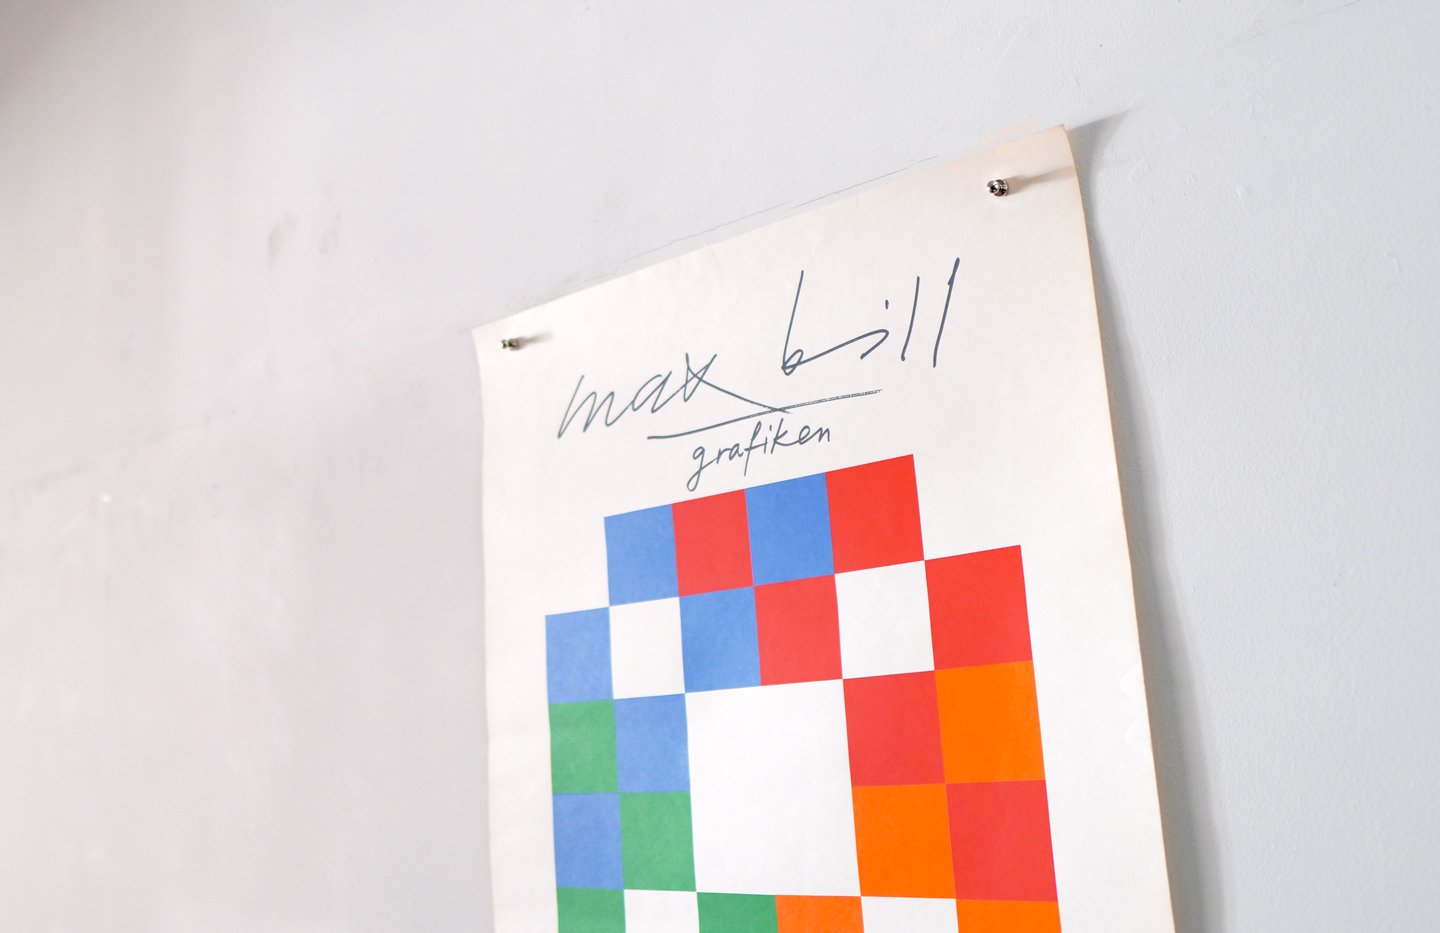 Max Bill / Schlossgalerie der Stadt Argon 1977 - マックス ビル